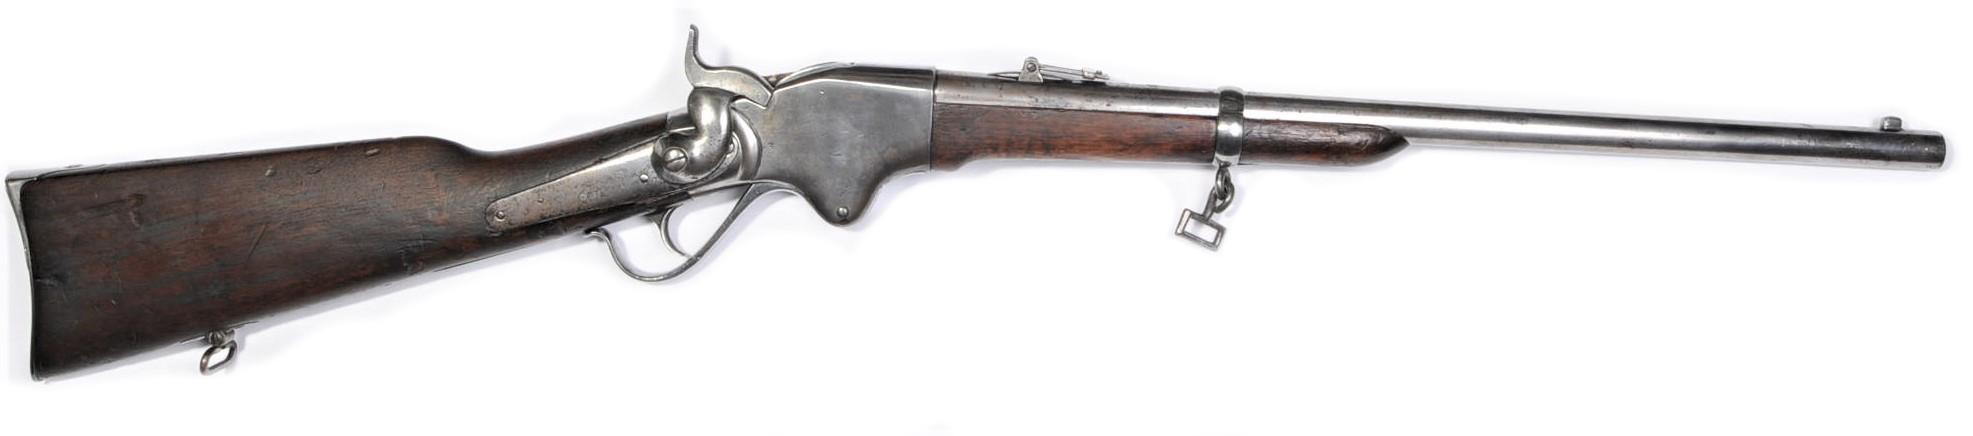 US Civil War era Spencer .52 Caliber Lever-Action Carbine - no FFL needed - Serial # 18502 (SRW 1)